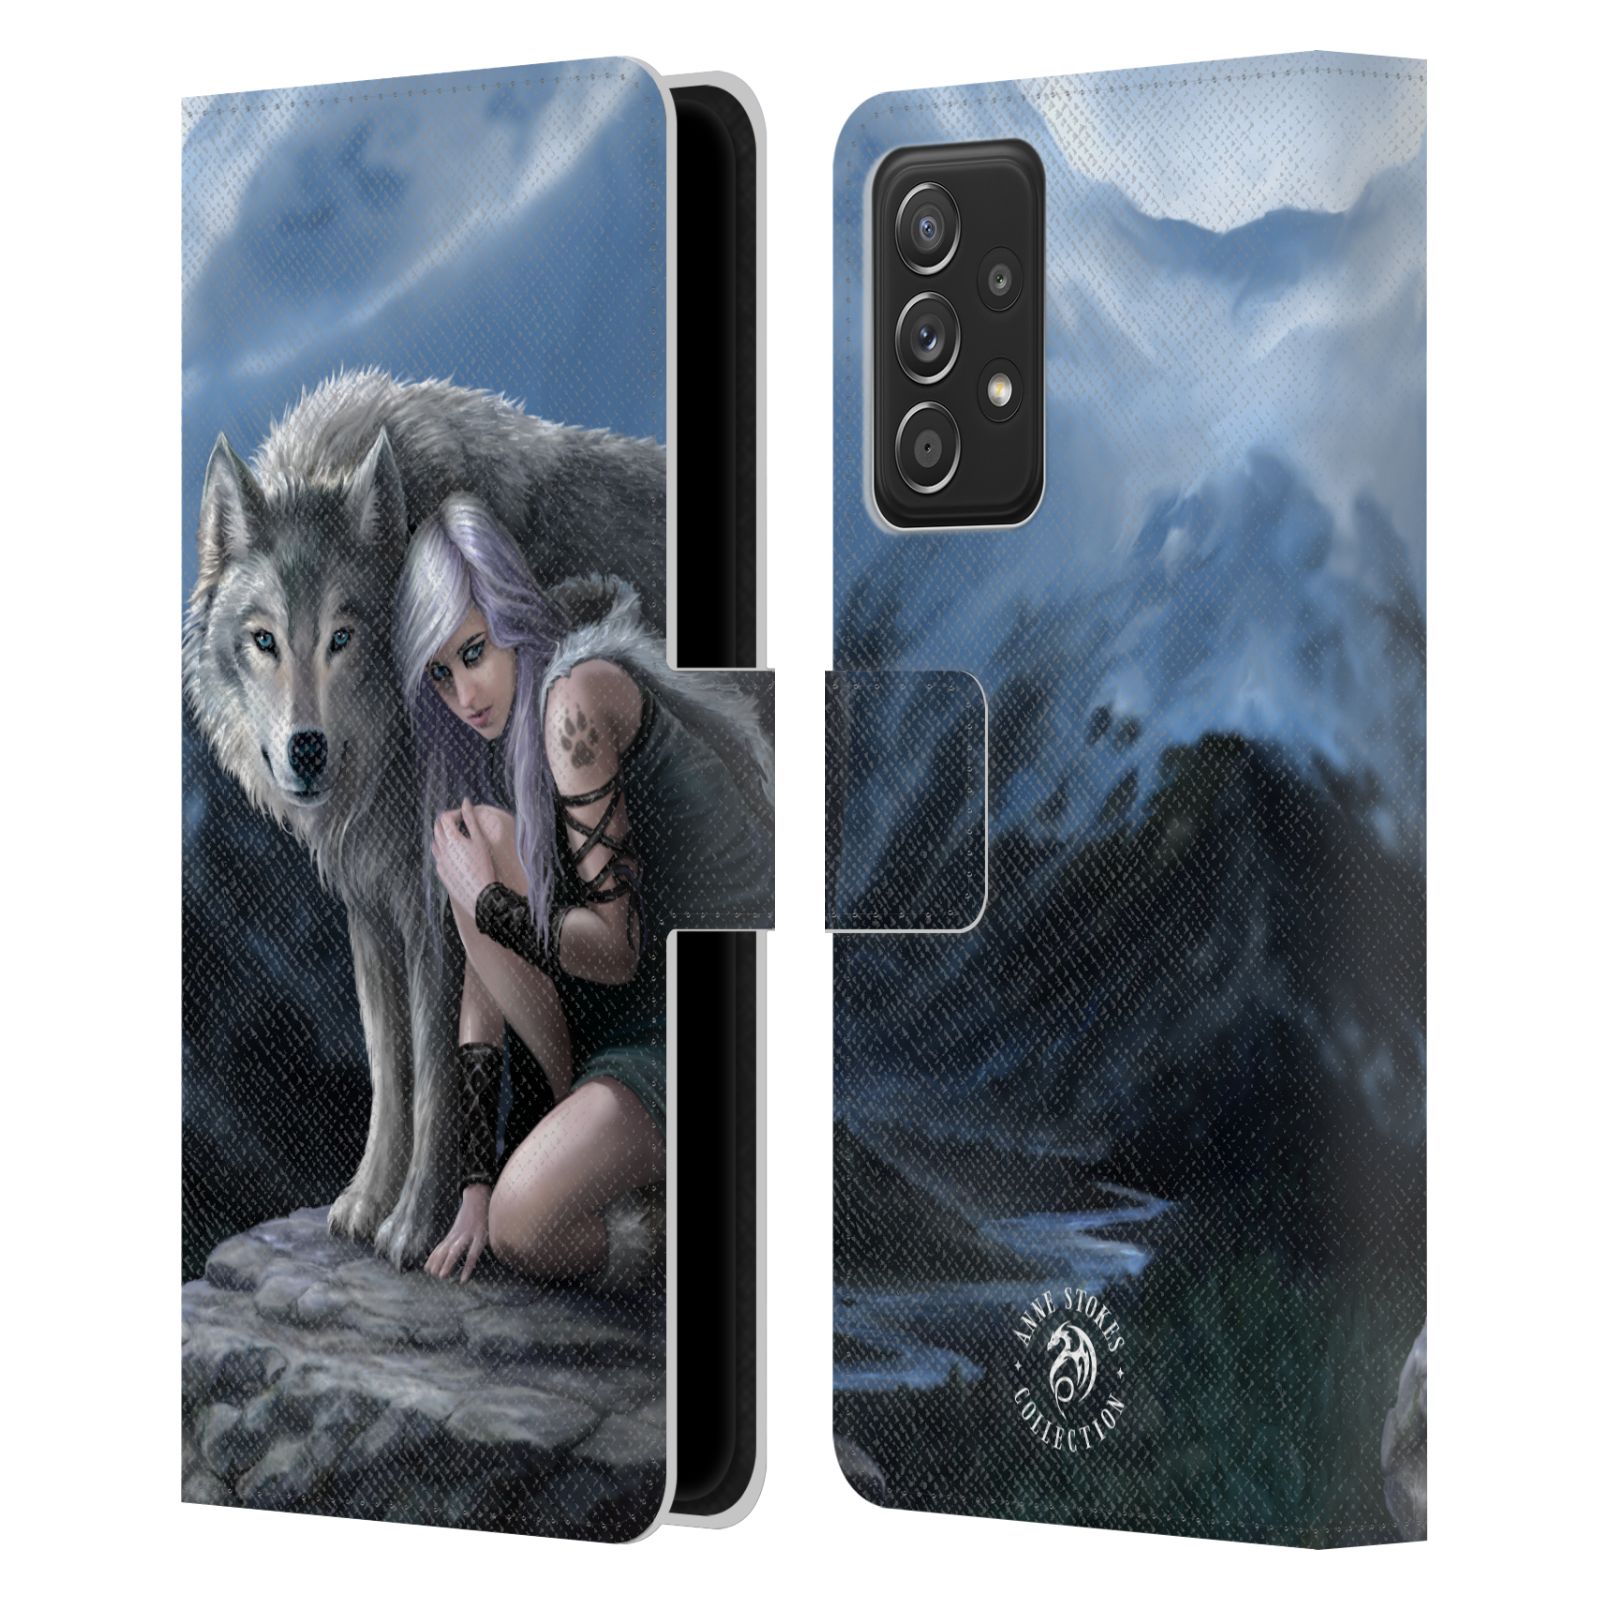 Pouzdro HEAD CASE na mobil Samsung Galaxy A52 / A52 5G / A52s 5G  fantasy - vlk ochránce